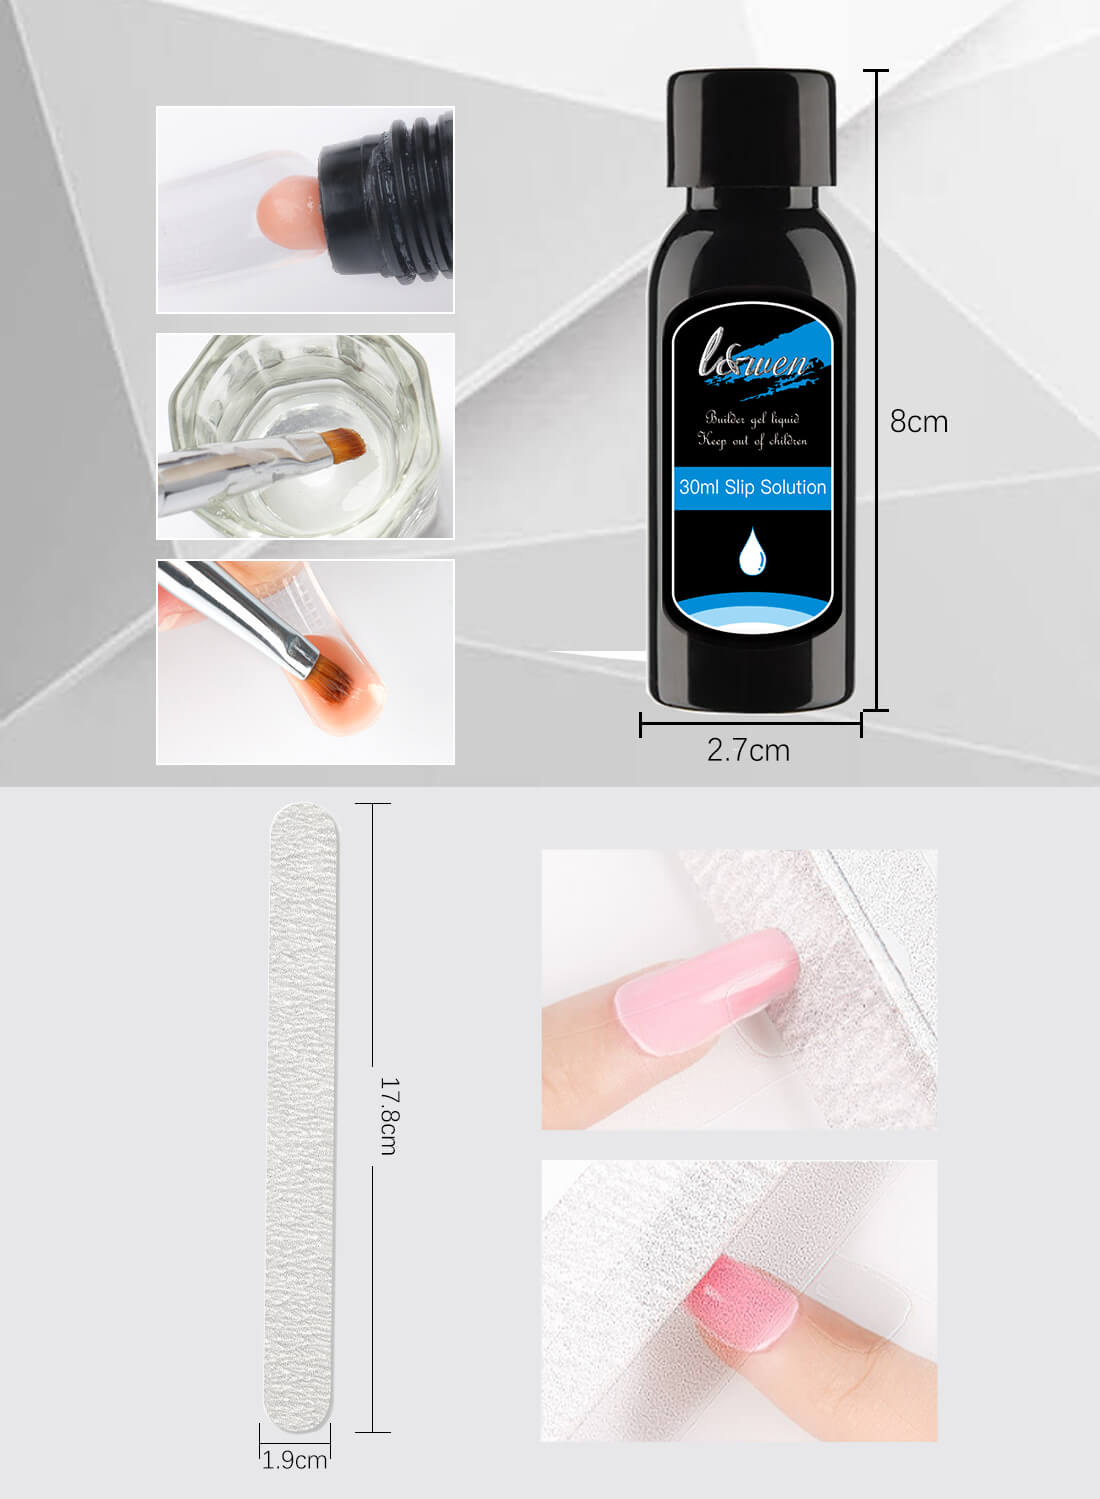 L&wen 14Pcs Nail Extension Gel Kit